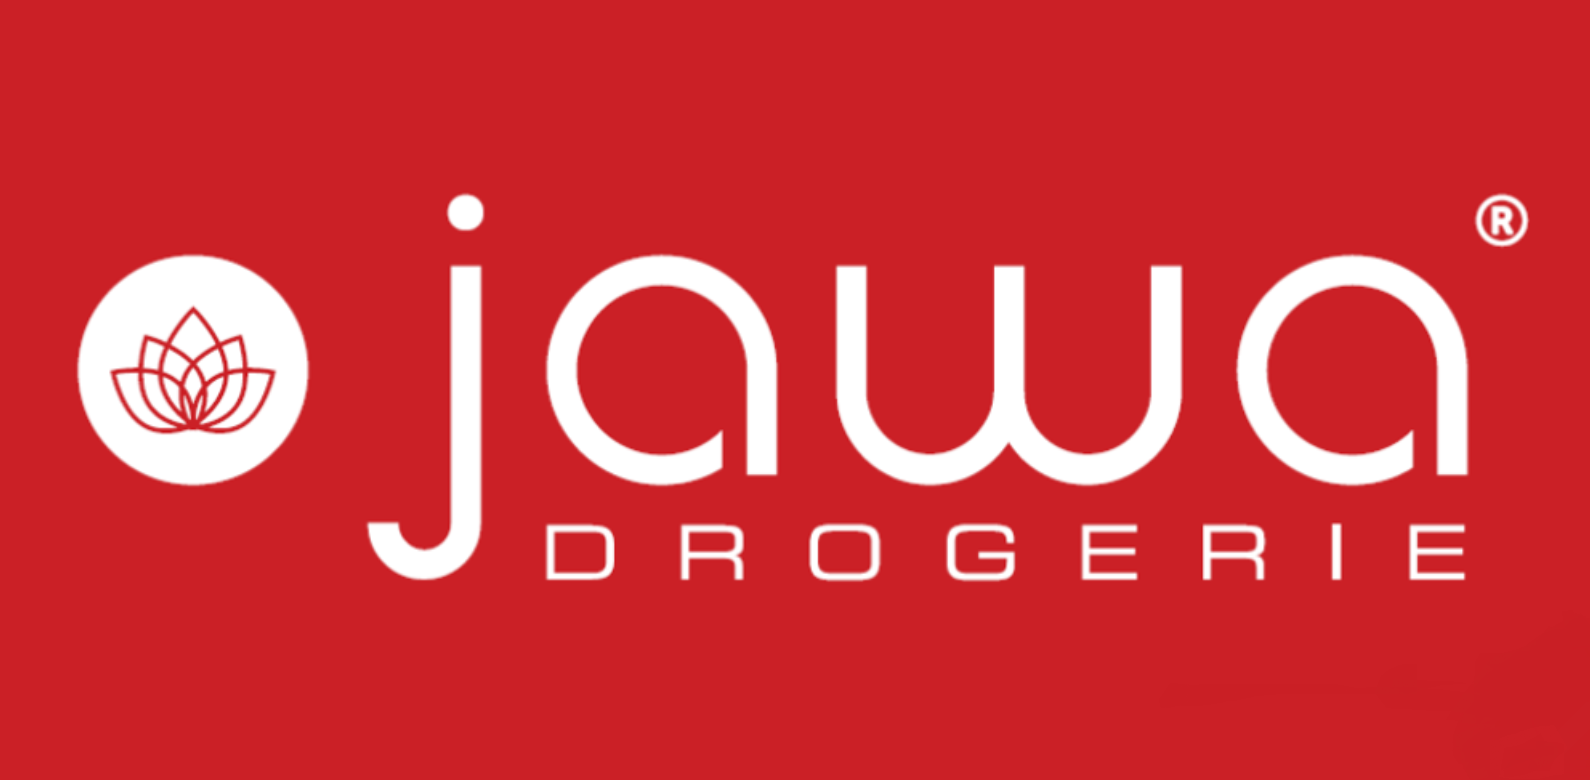 Nowa drogeria Jawa w Sędziszowie